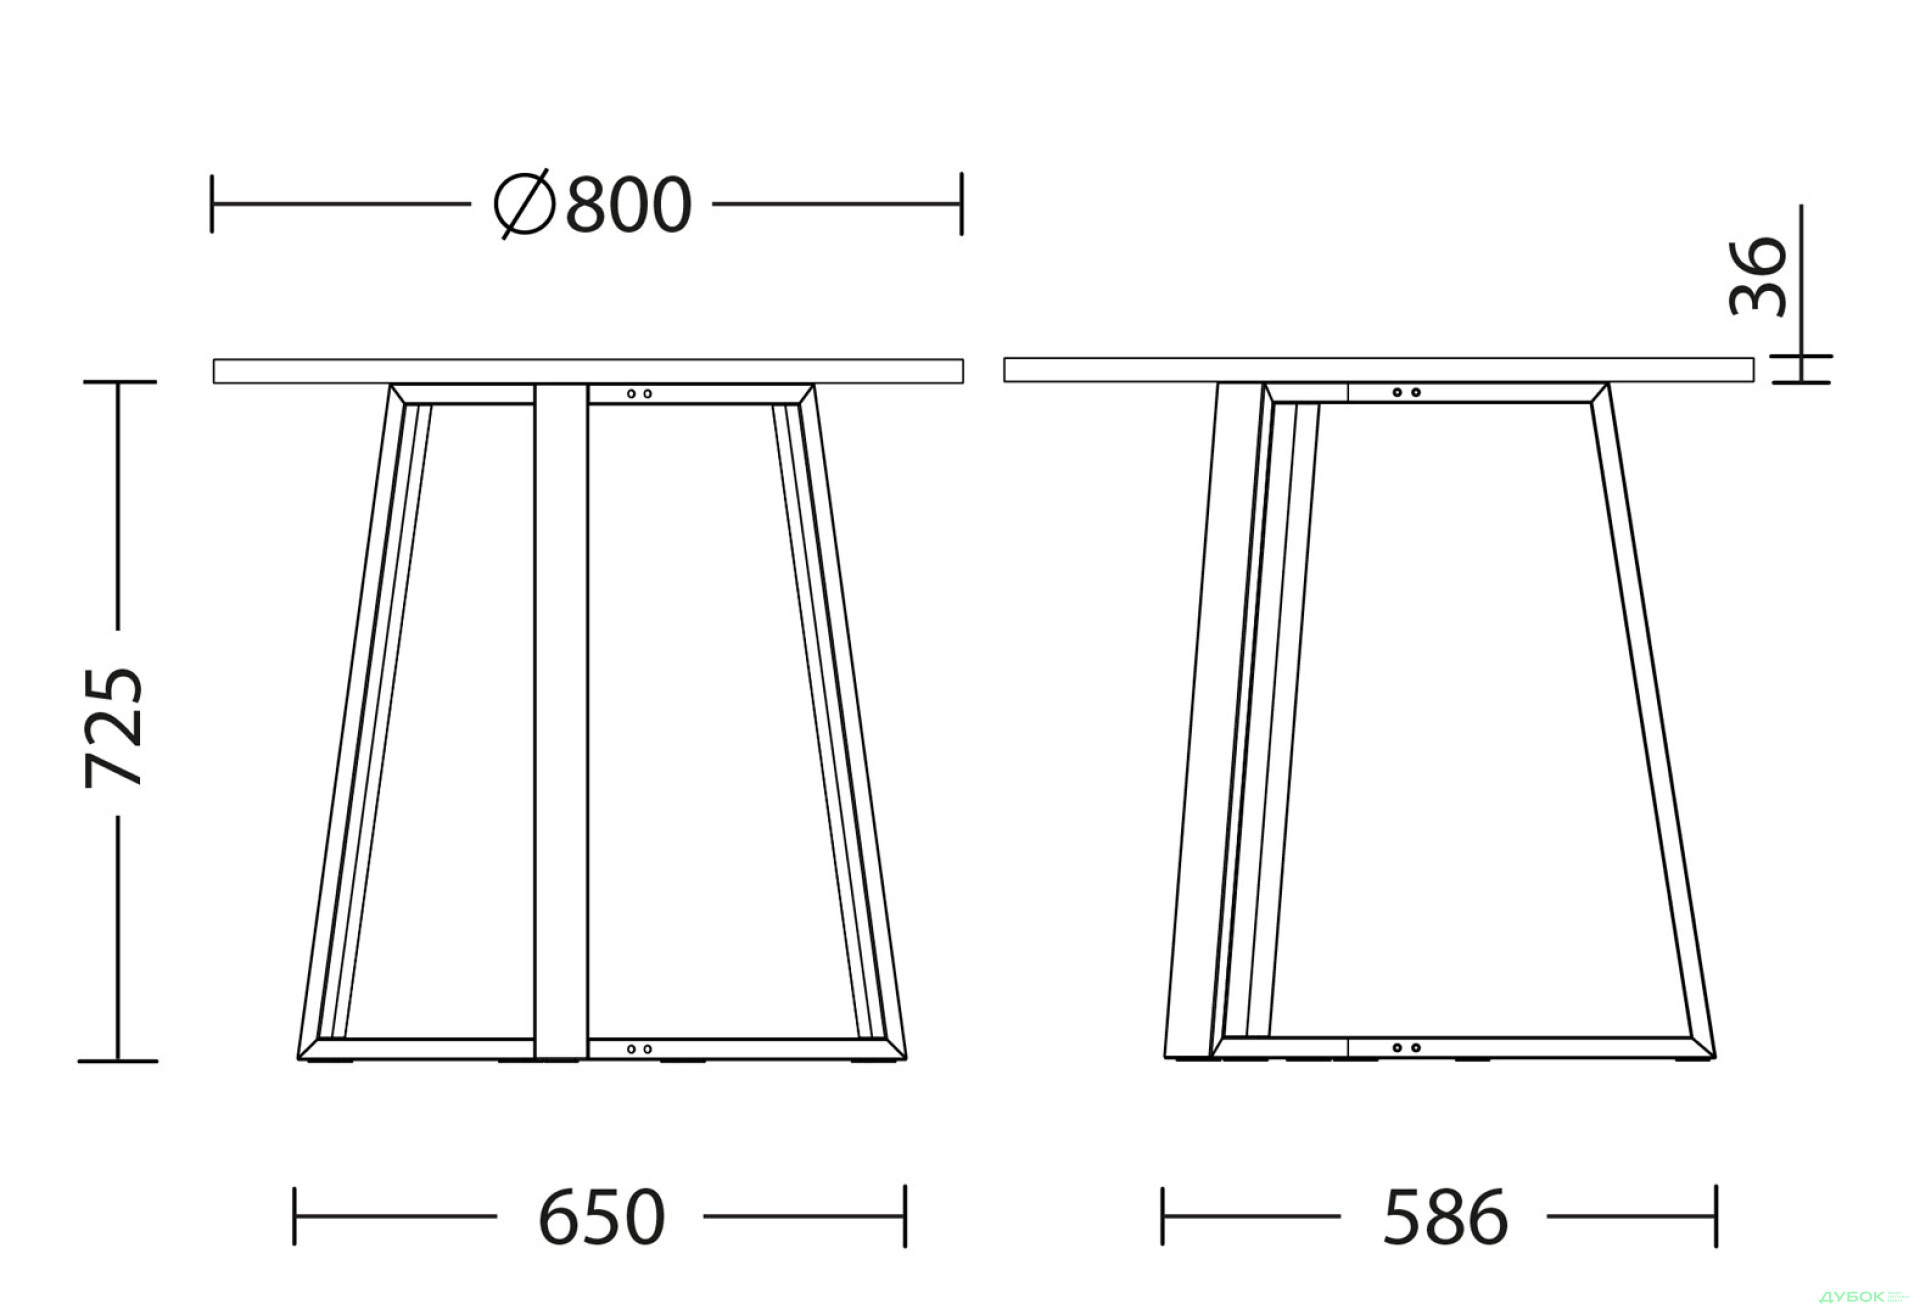 Фото 3 - Стол обеденный Новый Стиль Calipso black (36) D800 80x80 см, белый